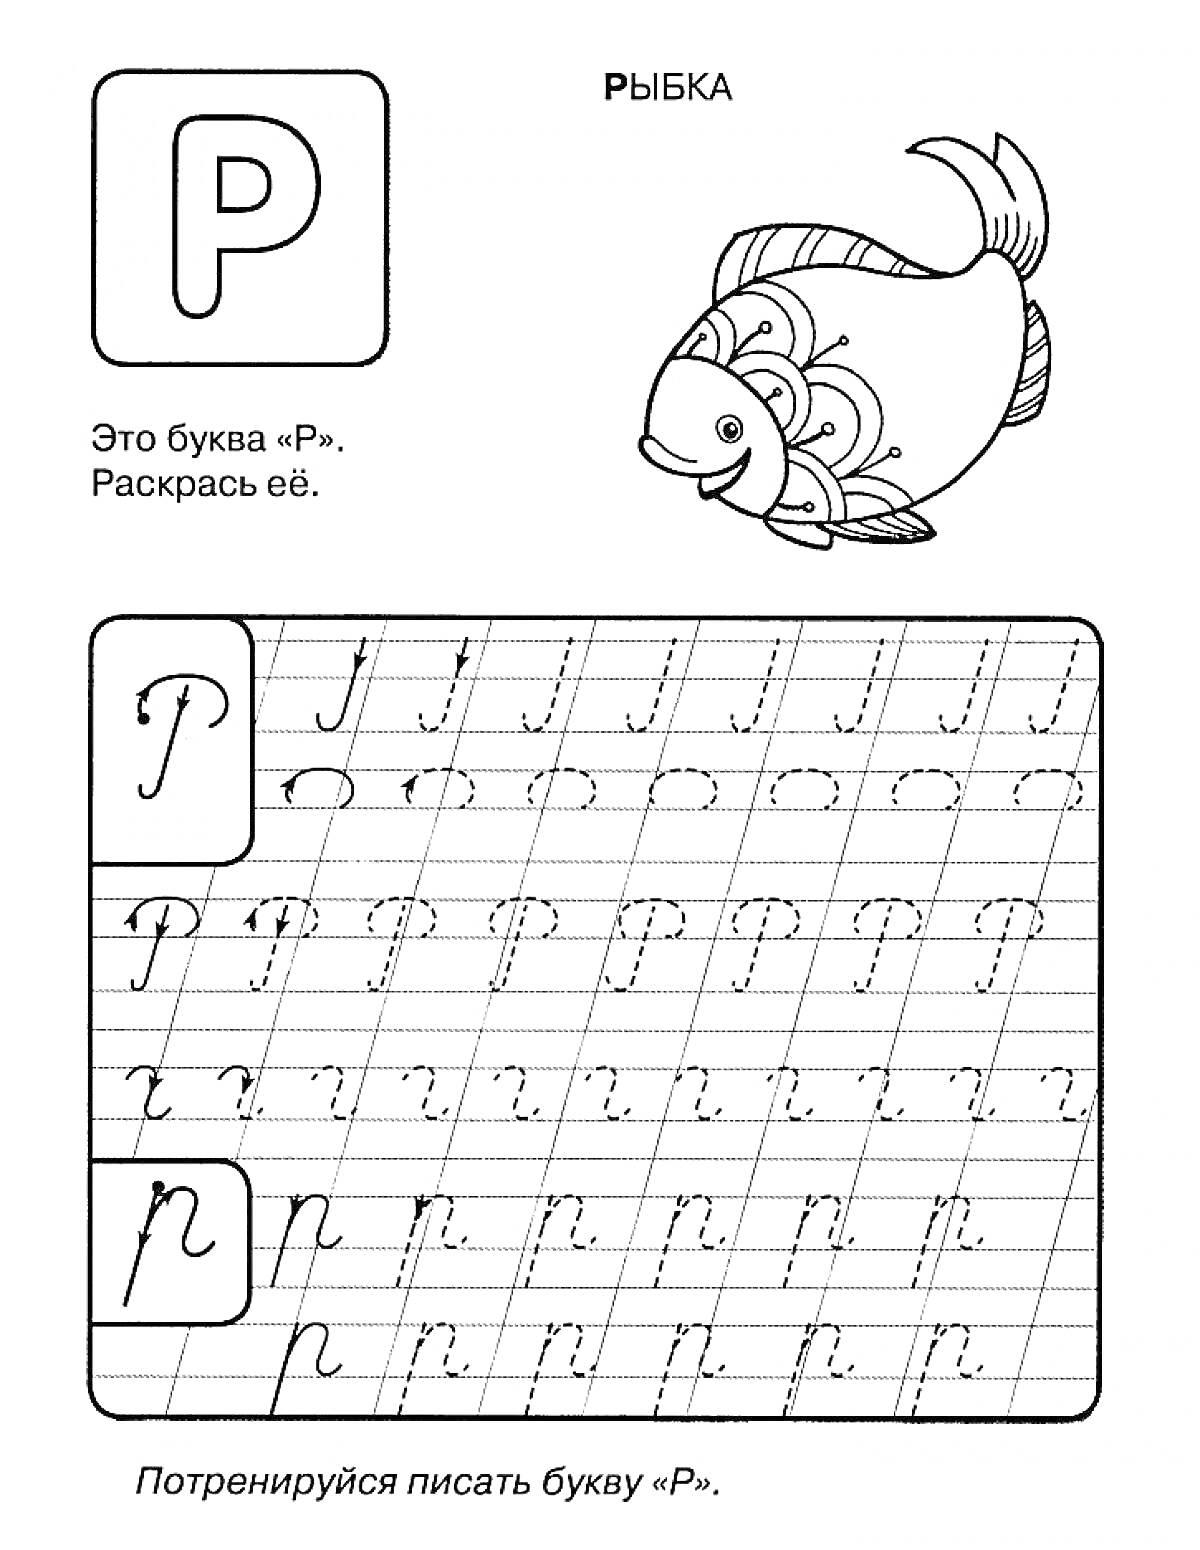 Раскраска Пропись буквы Р с картинкой рыбки